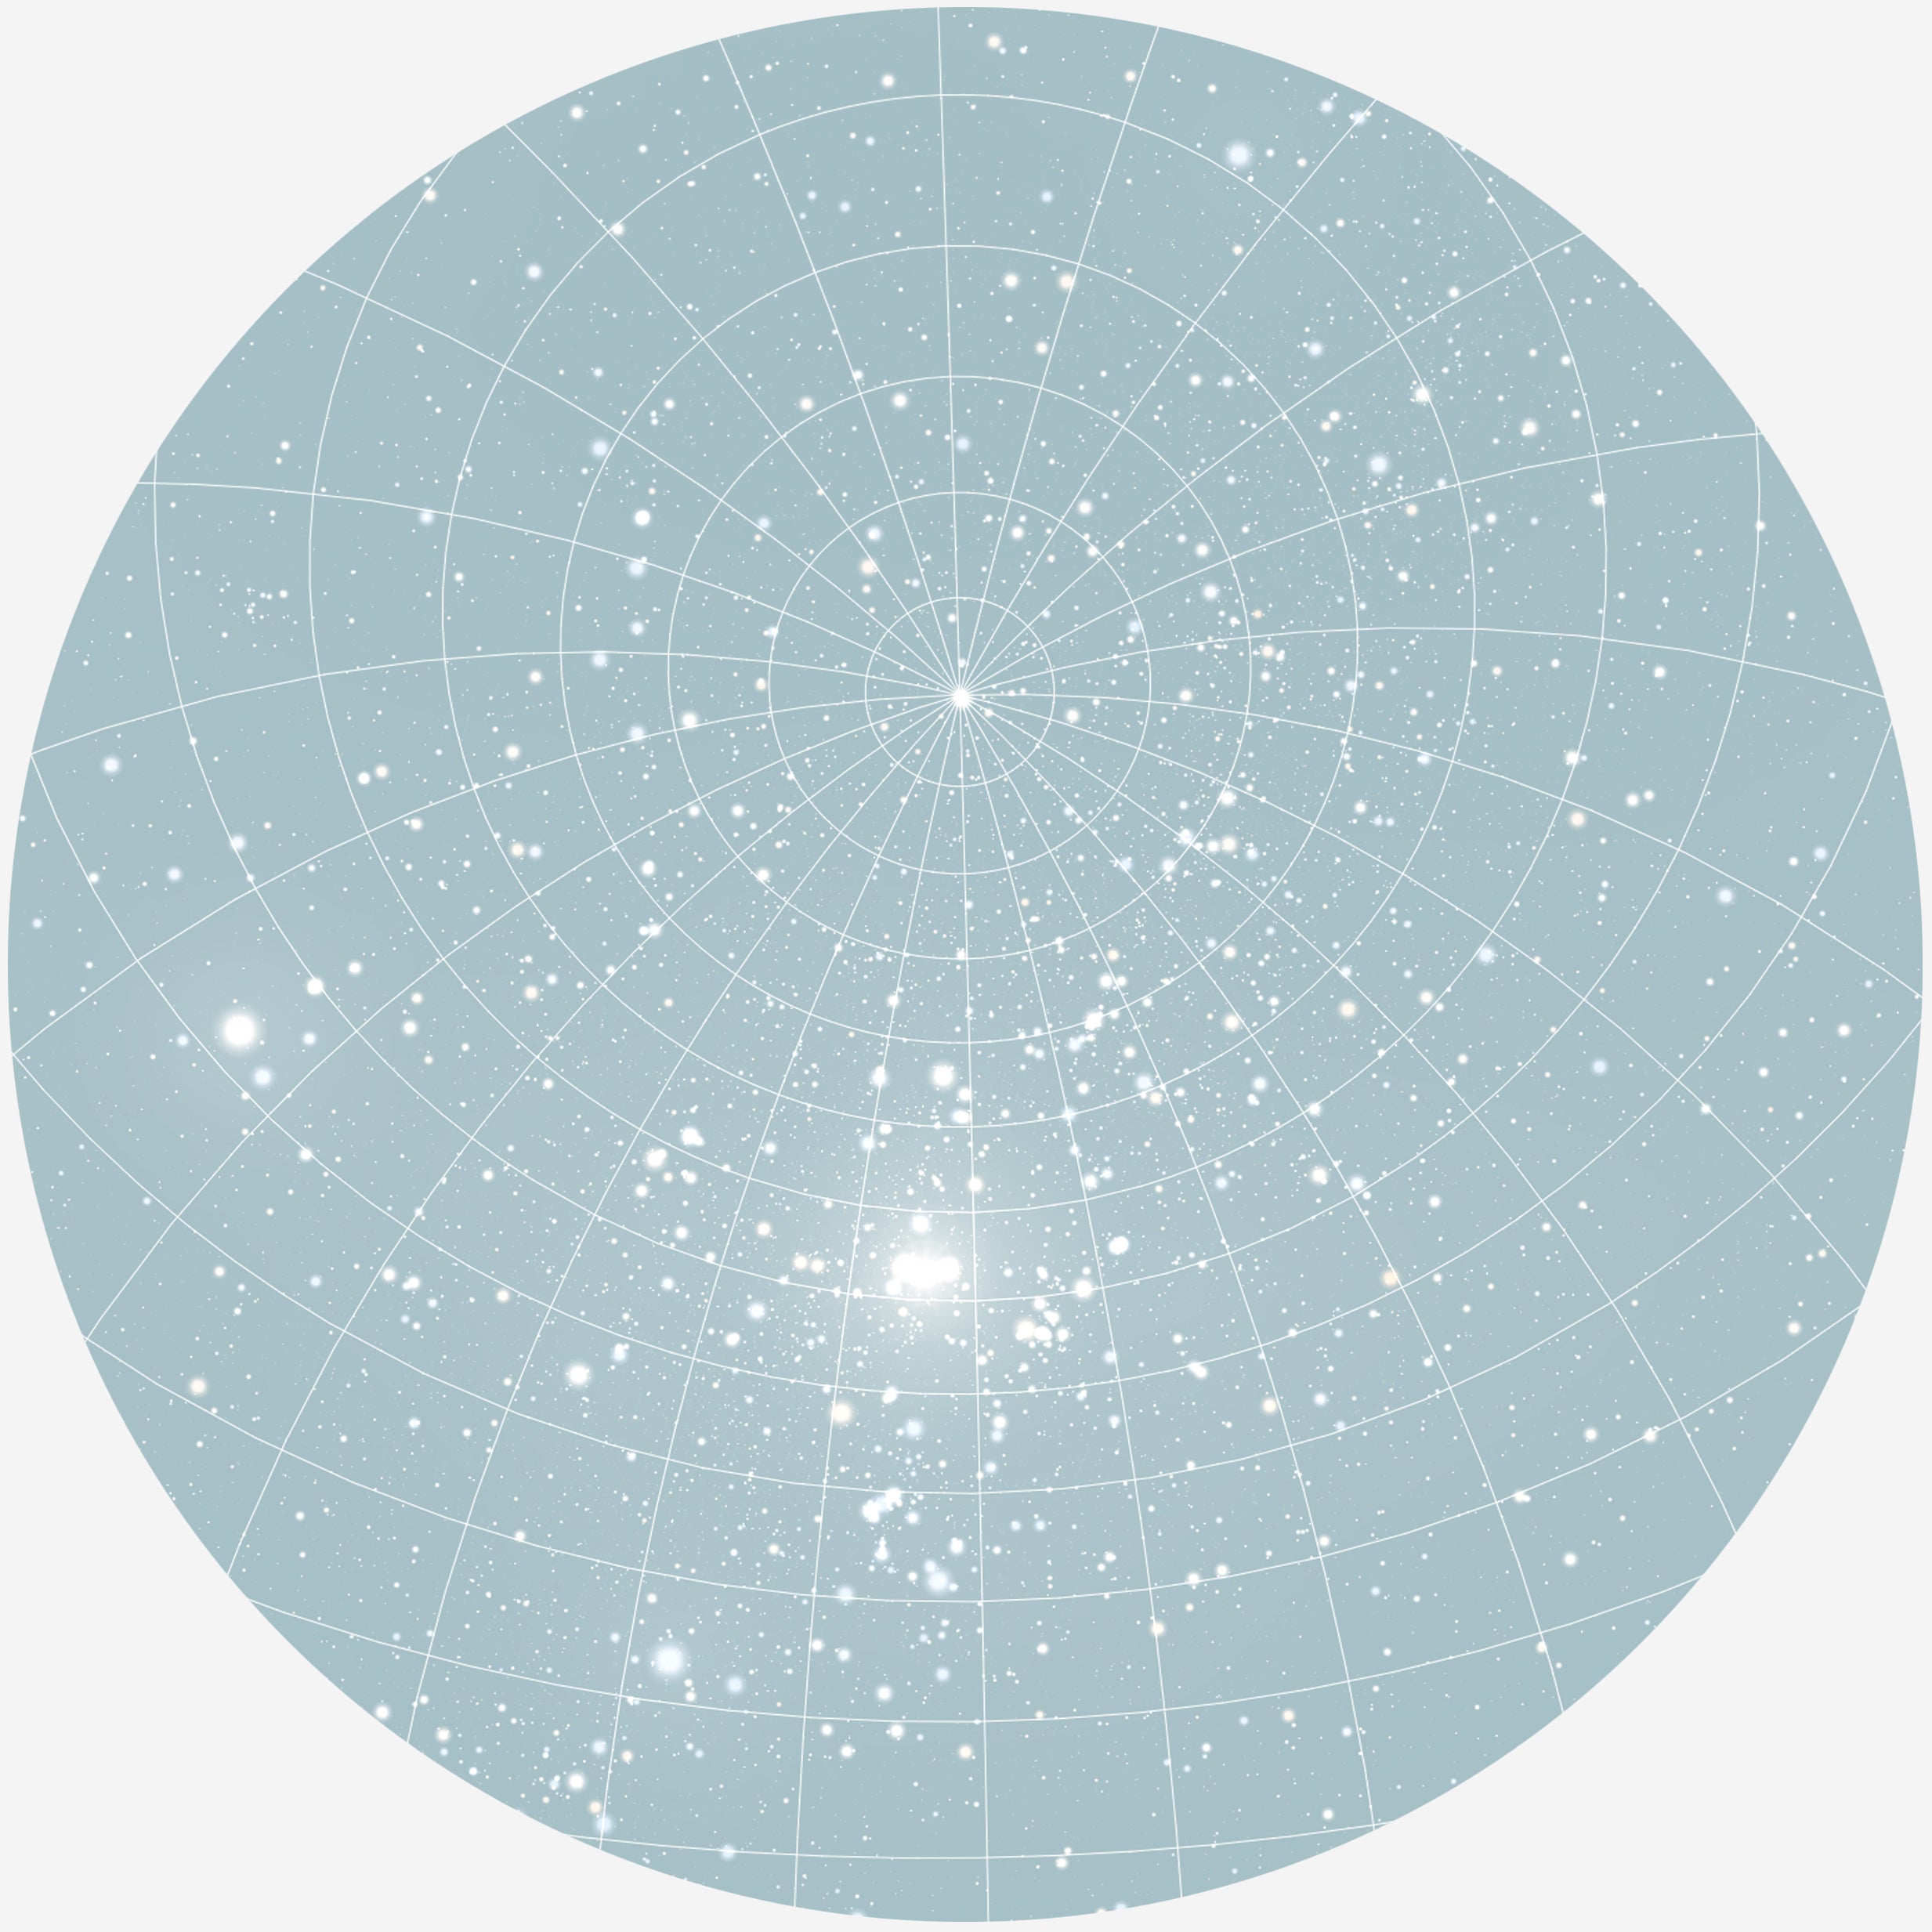 Se RUND PLAKAT MED PERSONLIG STJERNEHIMMEL (LYSEBLÅ) - 20 cm / Stjernehimmel med gitter hos KISPUS